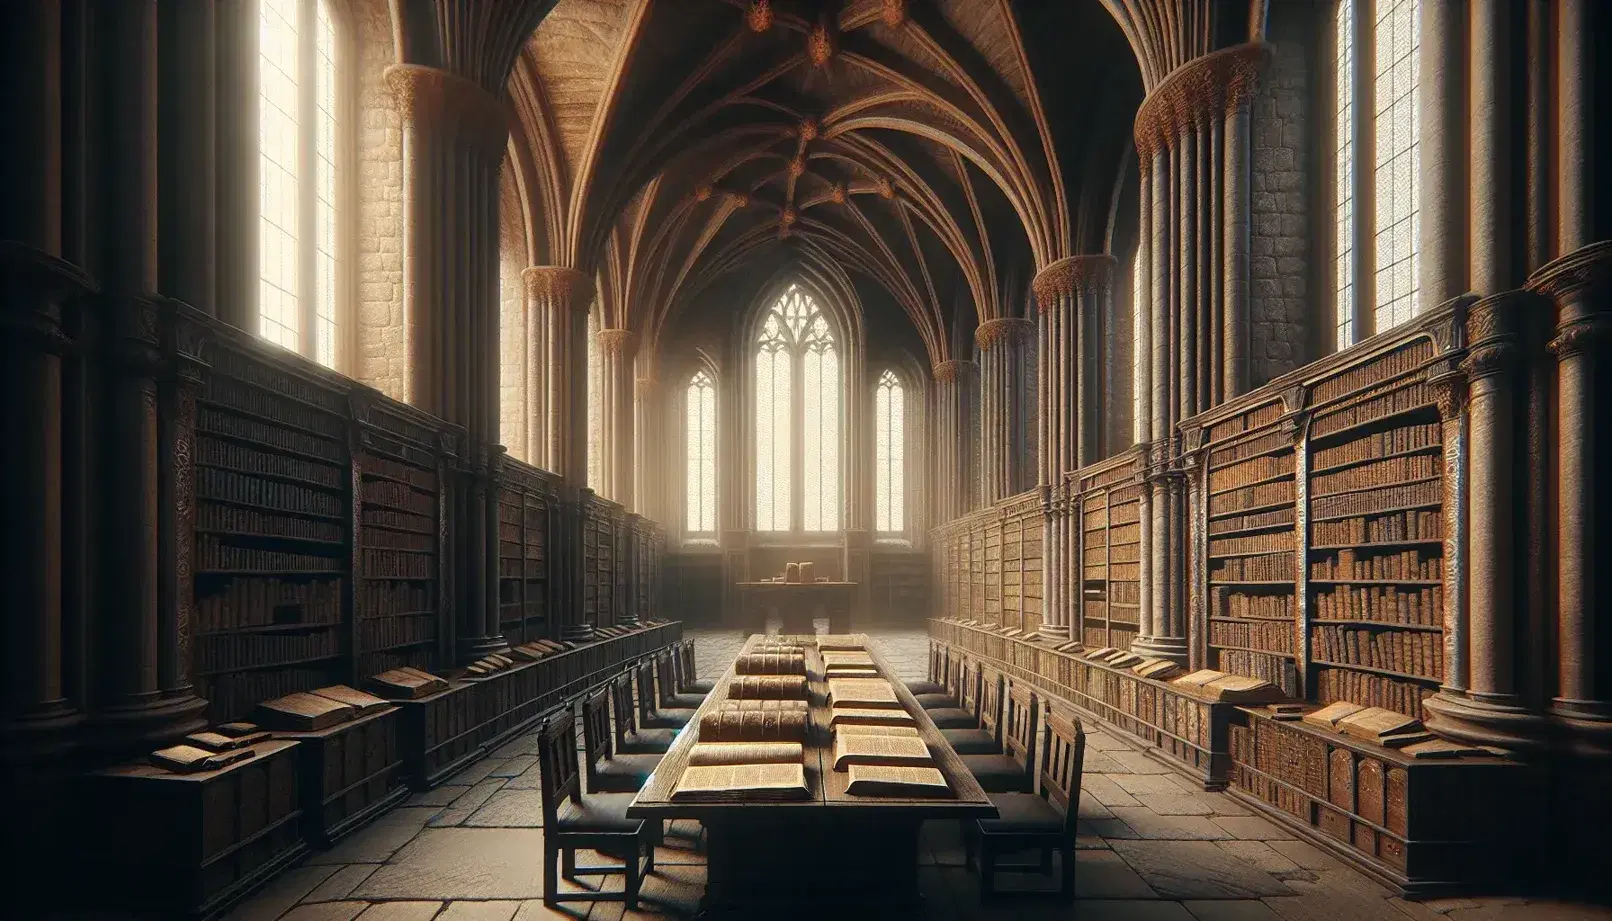 Interno di una biblioteca monastica antica con soffitti a volta, tavolo lungo con manoscritti, scaffali di libri e monaco che legge.